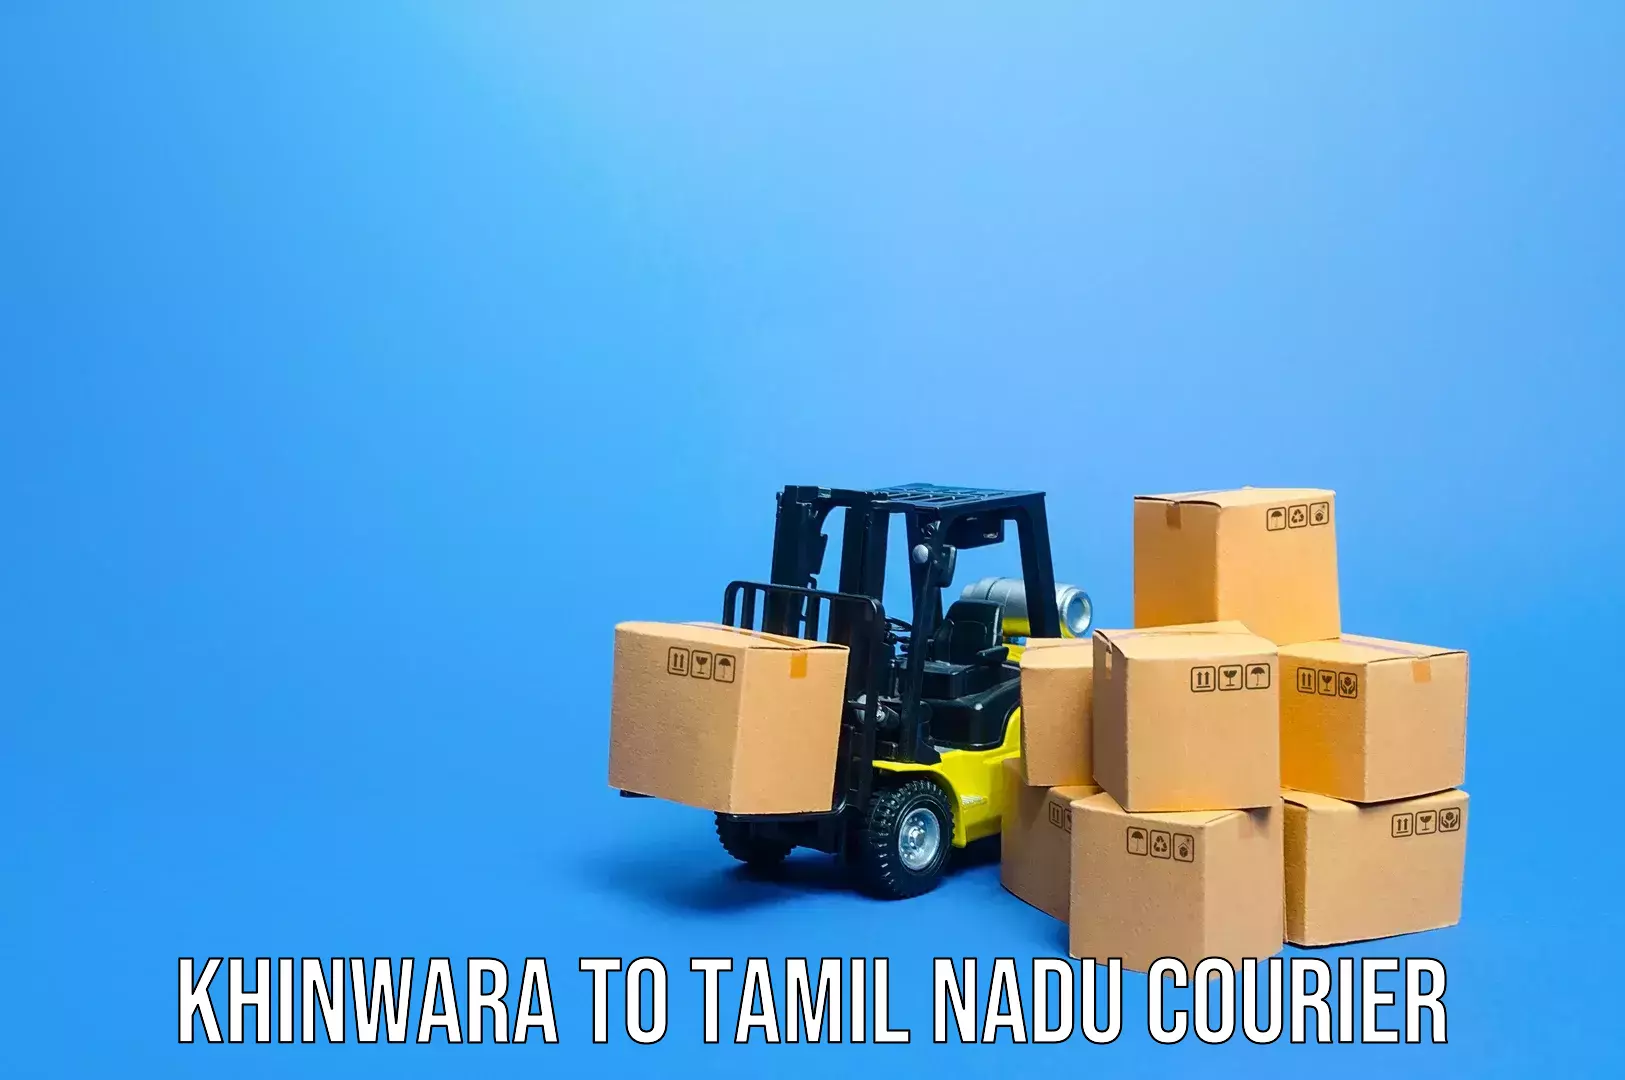 Baggage transport management in Khinwara to Tamil Nadu